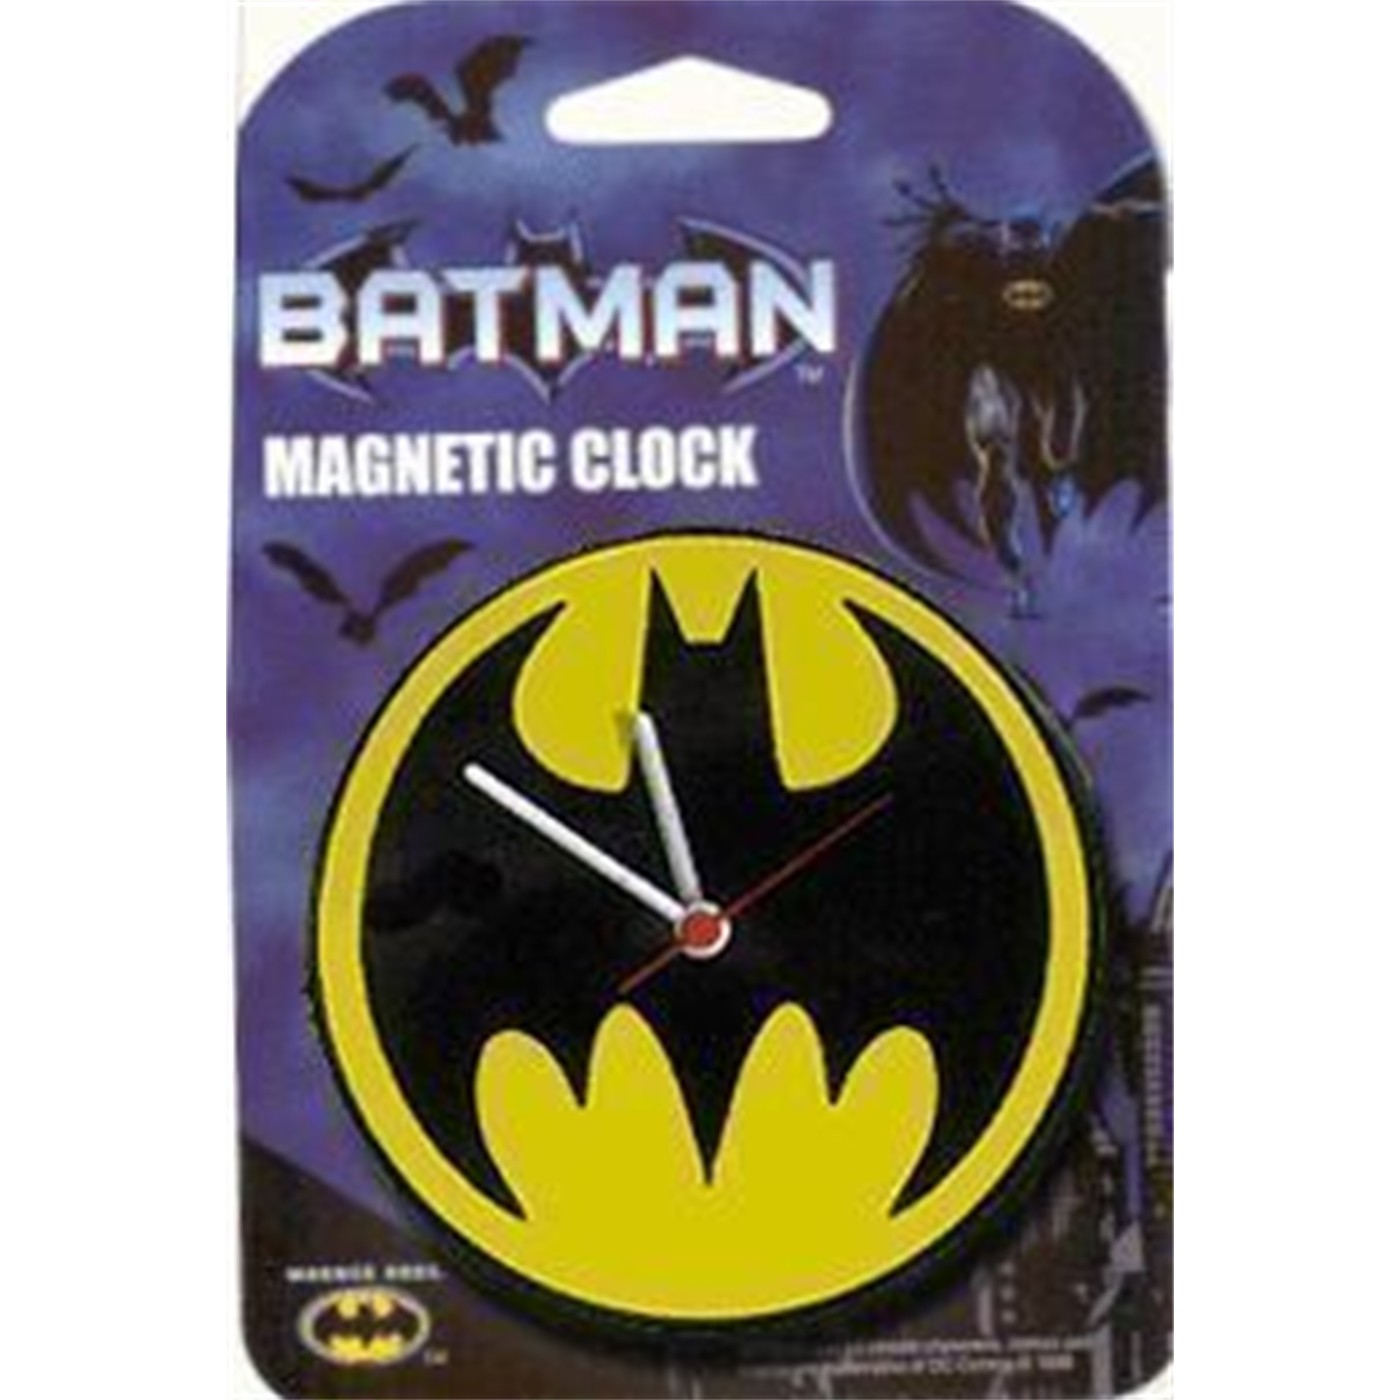 Batman Magnetic Clock